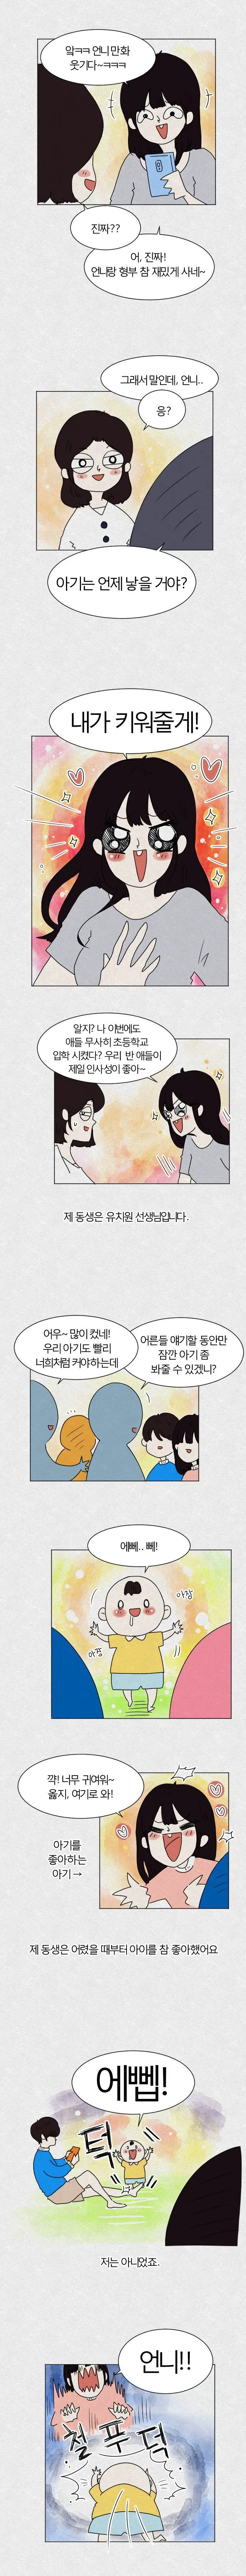 아기 언제 낳을건지 물어보는 만화.manhwa | mbong.kr 엠봉